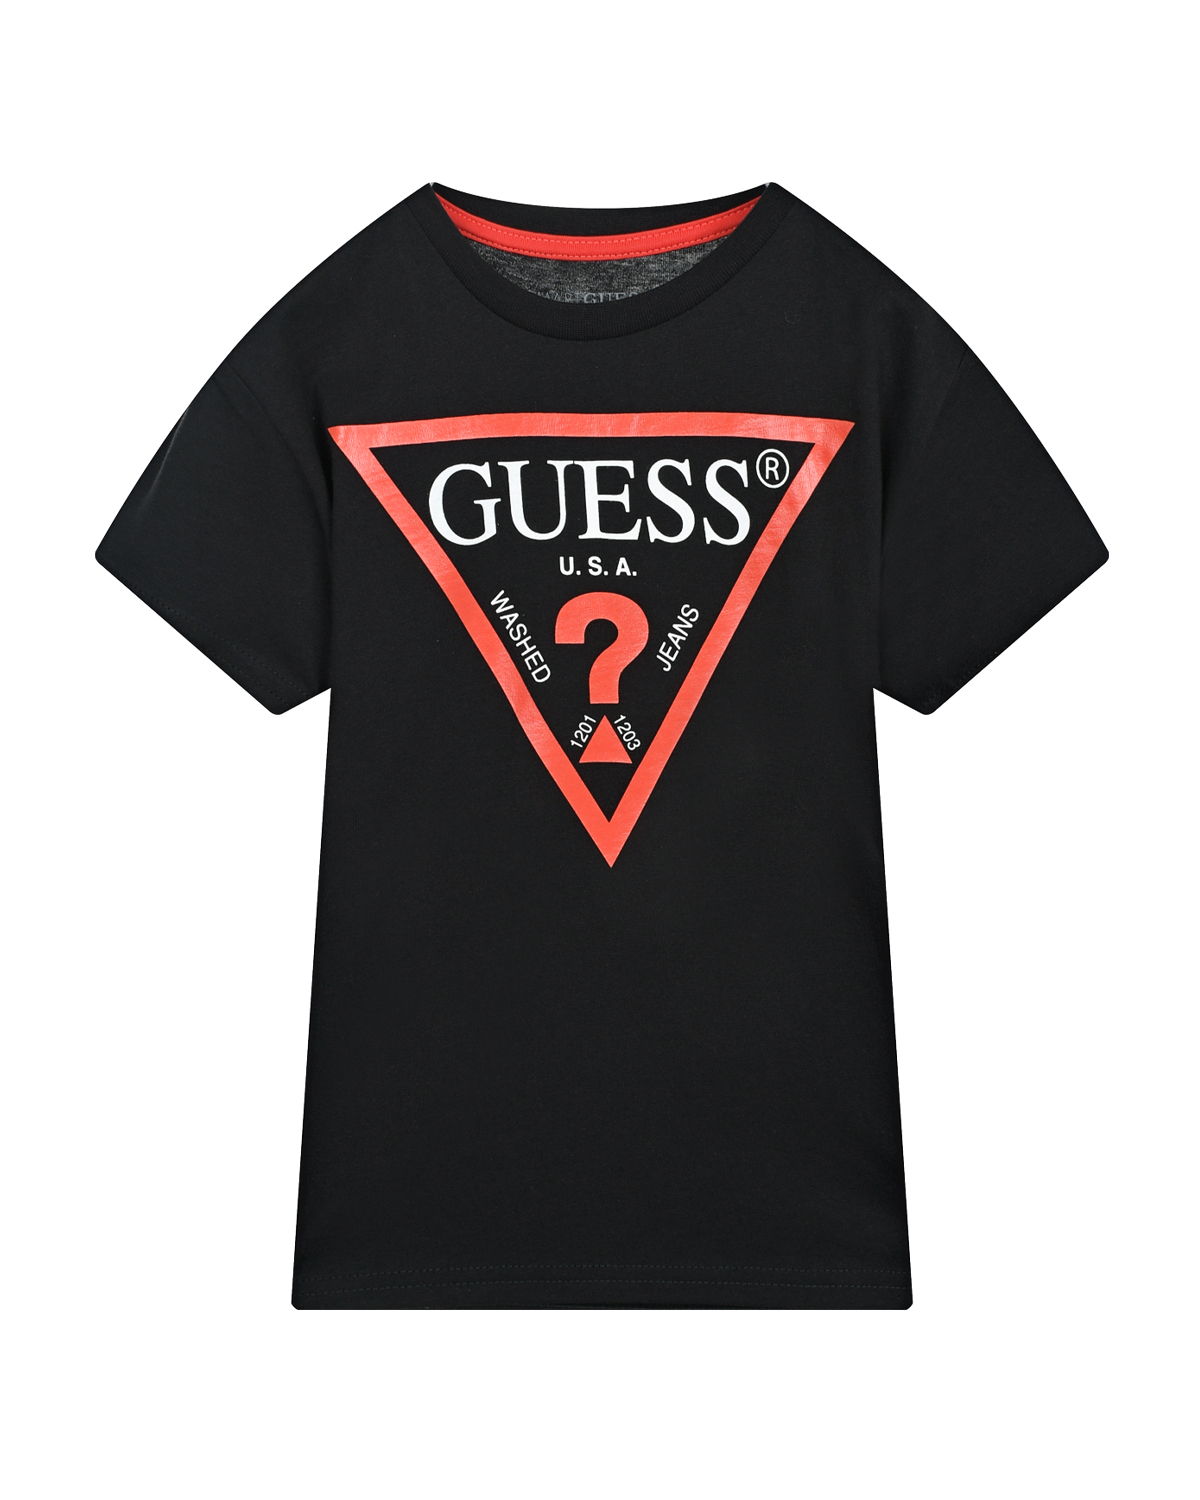 Черная футболка с красной отделкой Guess детская, размер 122, цвет черный - фото 1